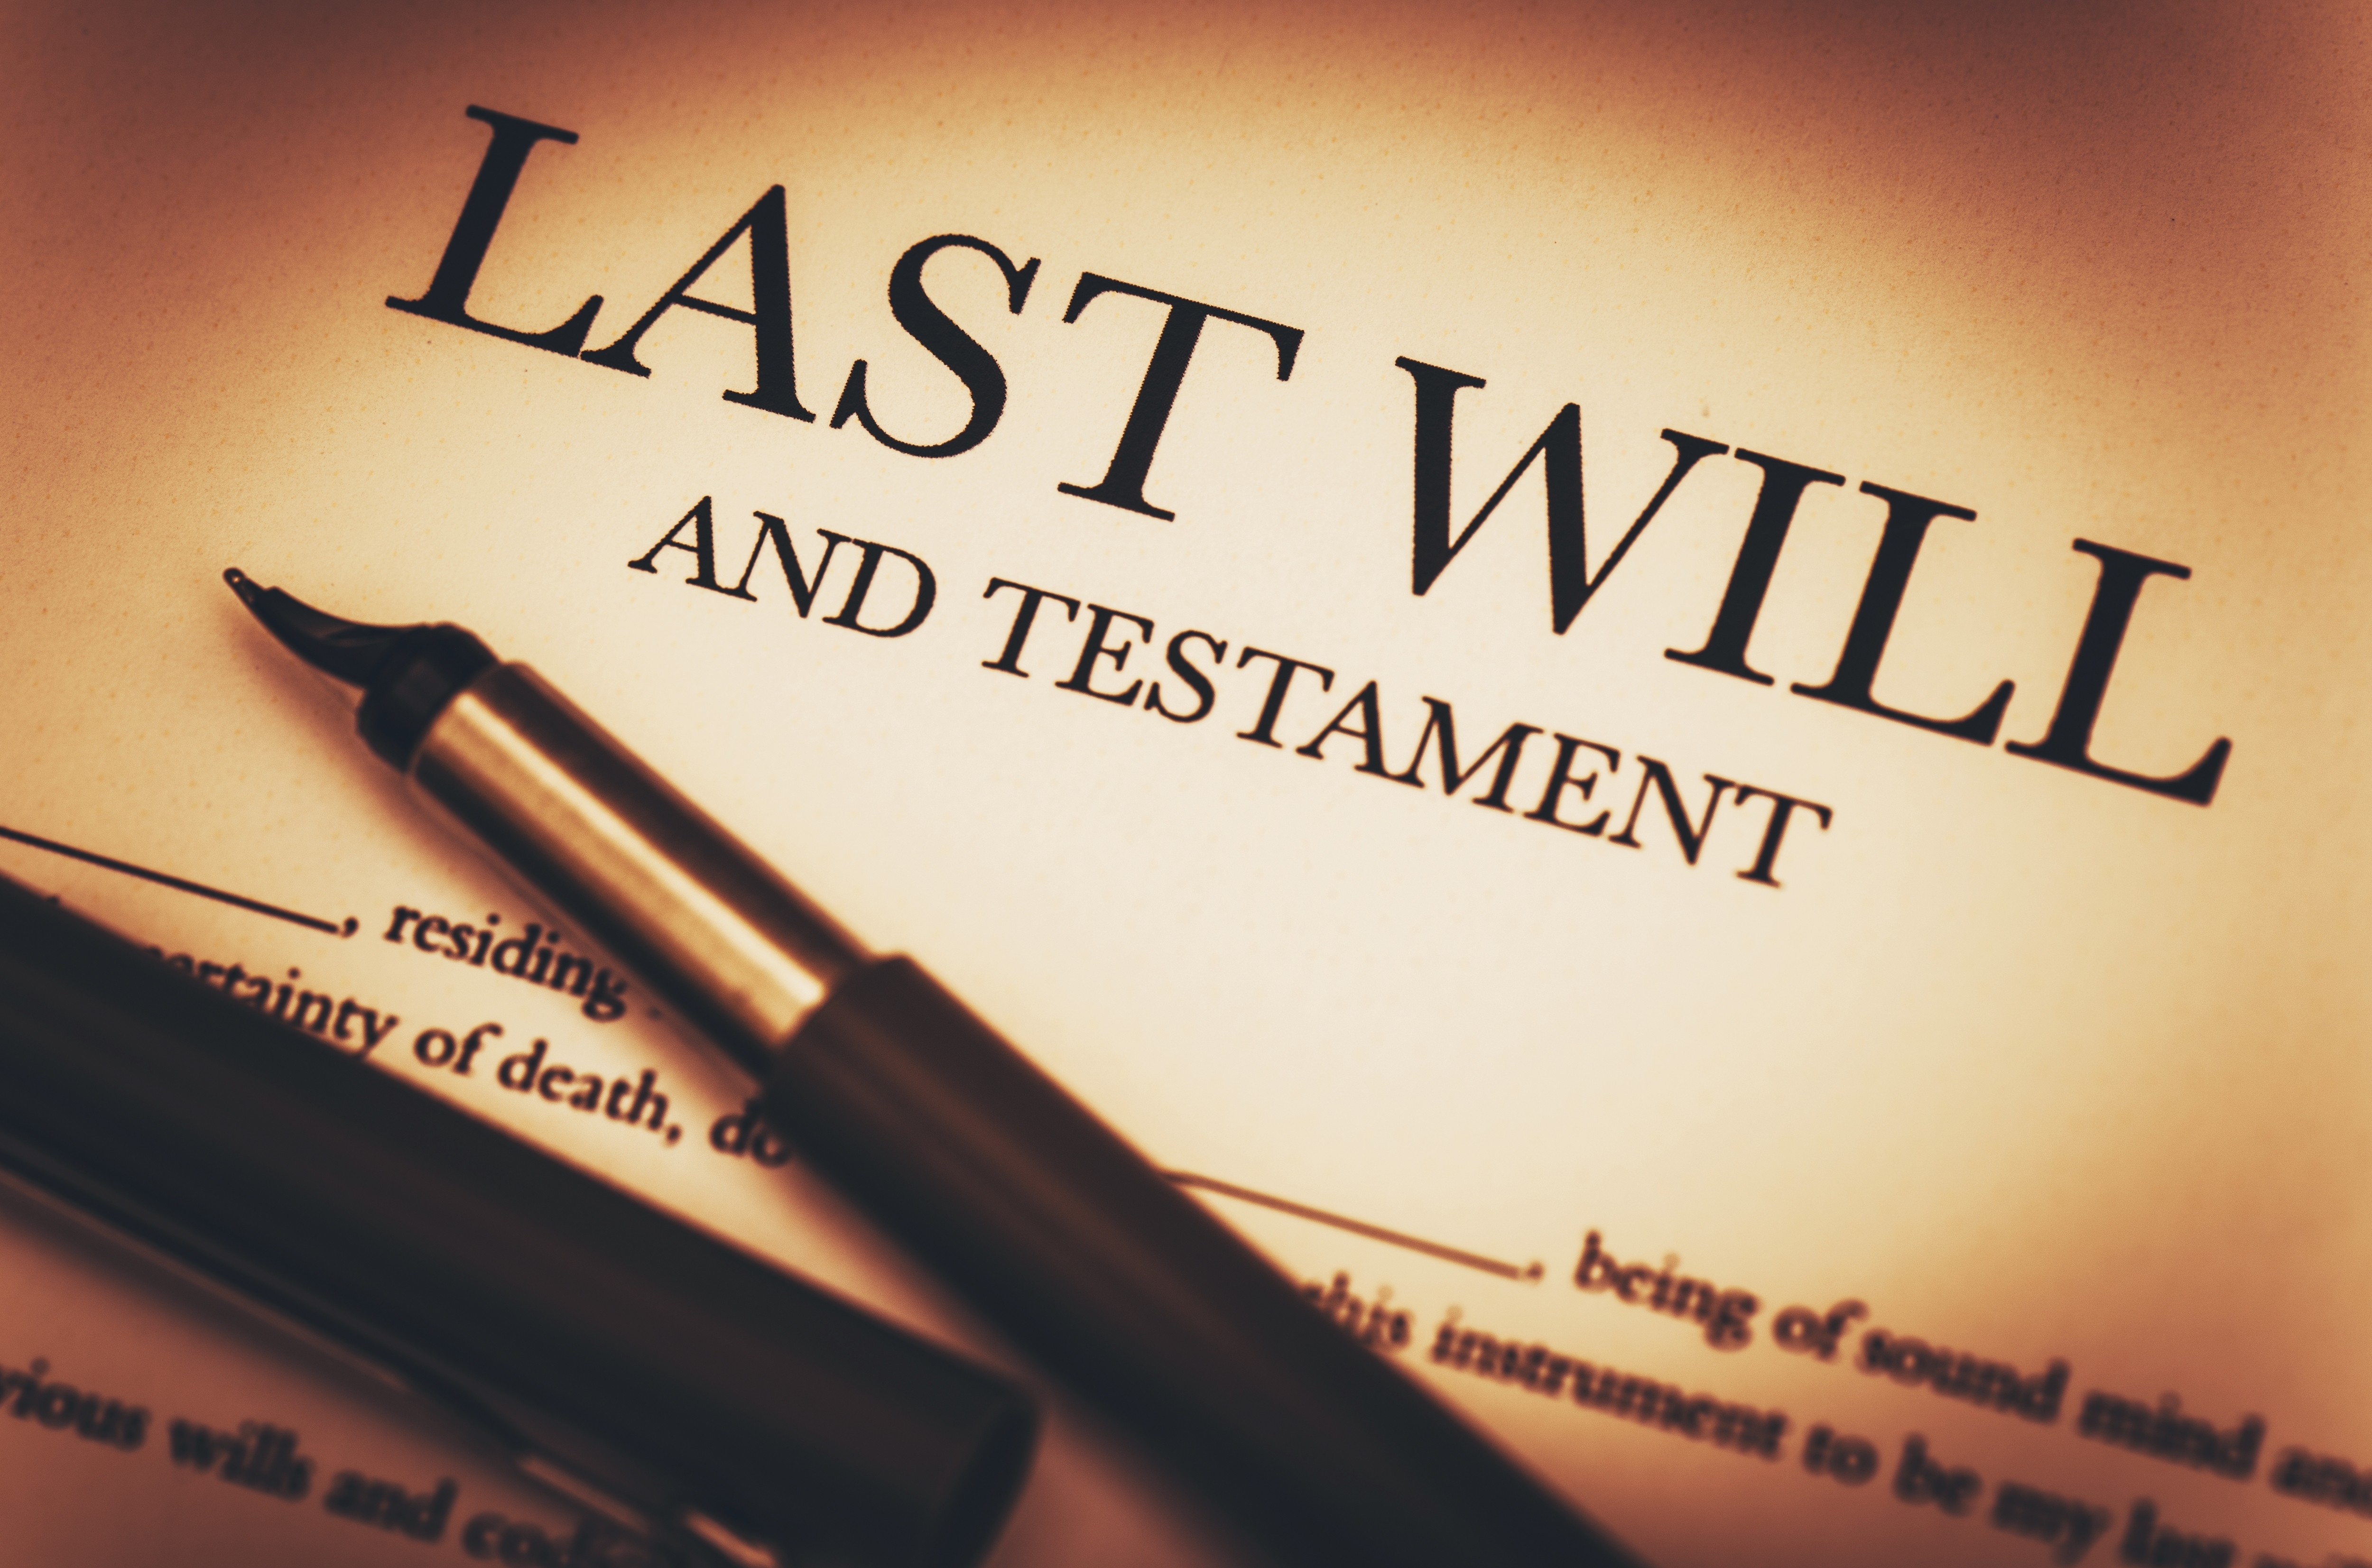 Primer plano de un documento con el título "Última voluntad y testamento" | Fuente: Shutterstock